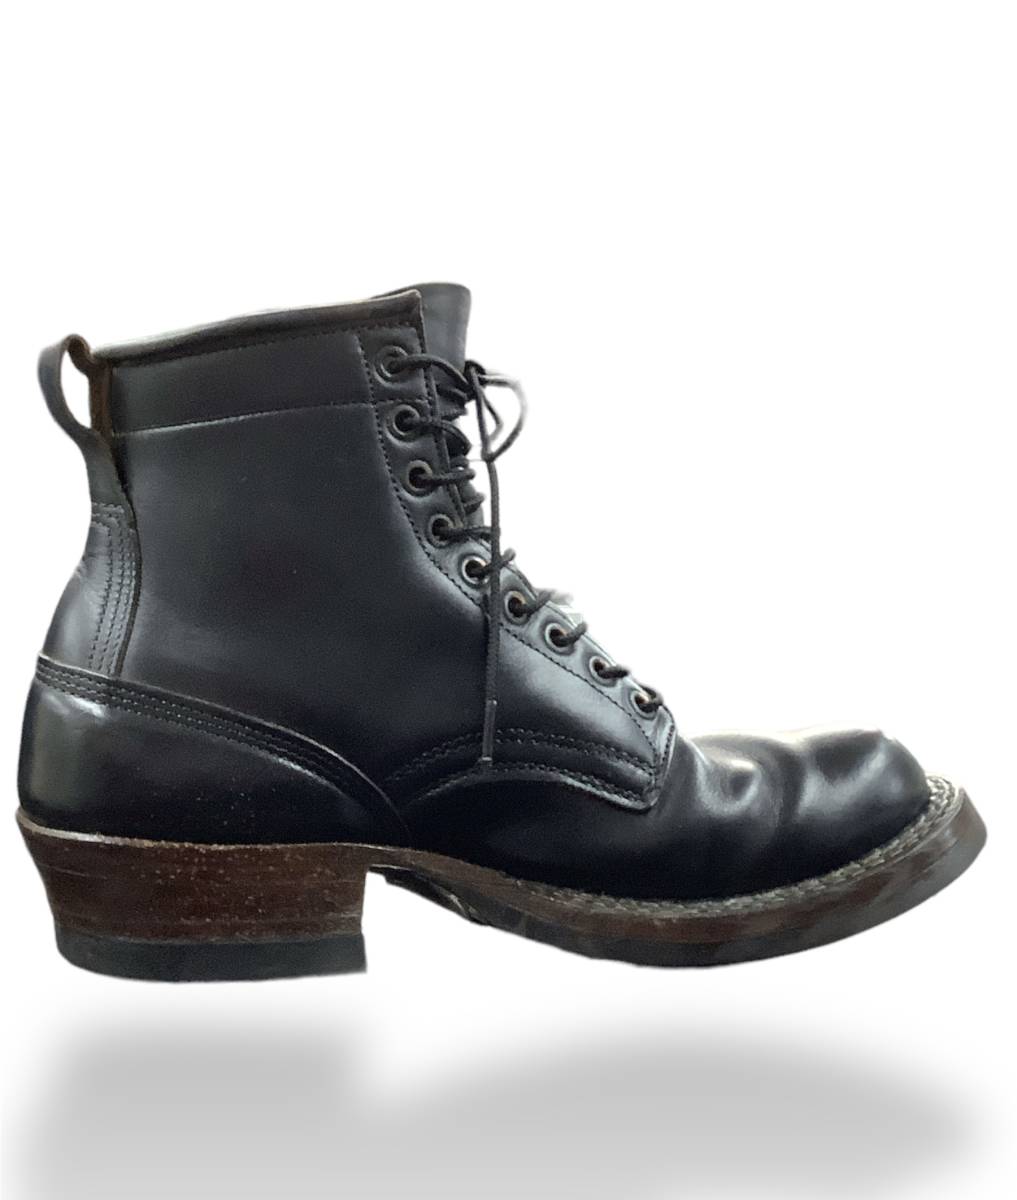 white‘s boots ホワイツブーツ 9ホール SEMI DRESS ワークブーツ セミドレスブーツ ブラック 7 1/2 店舗受取可